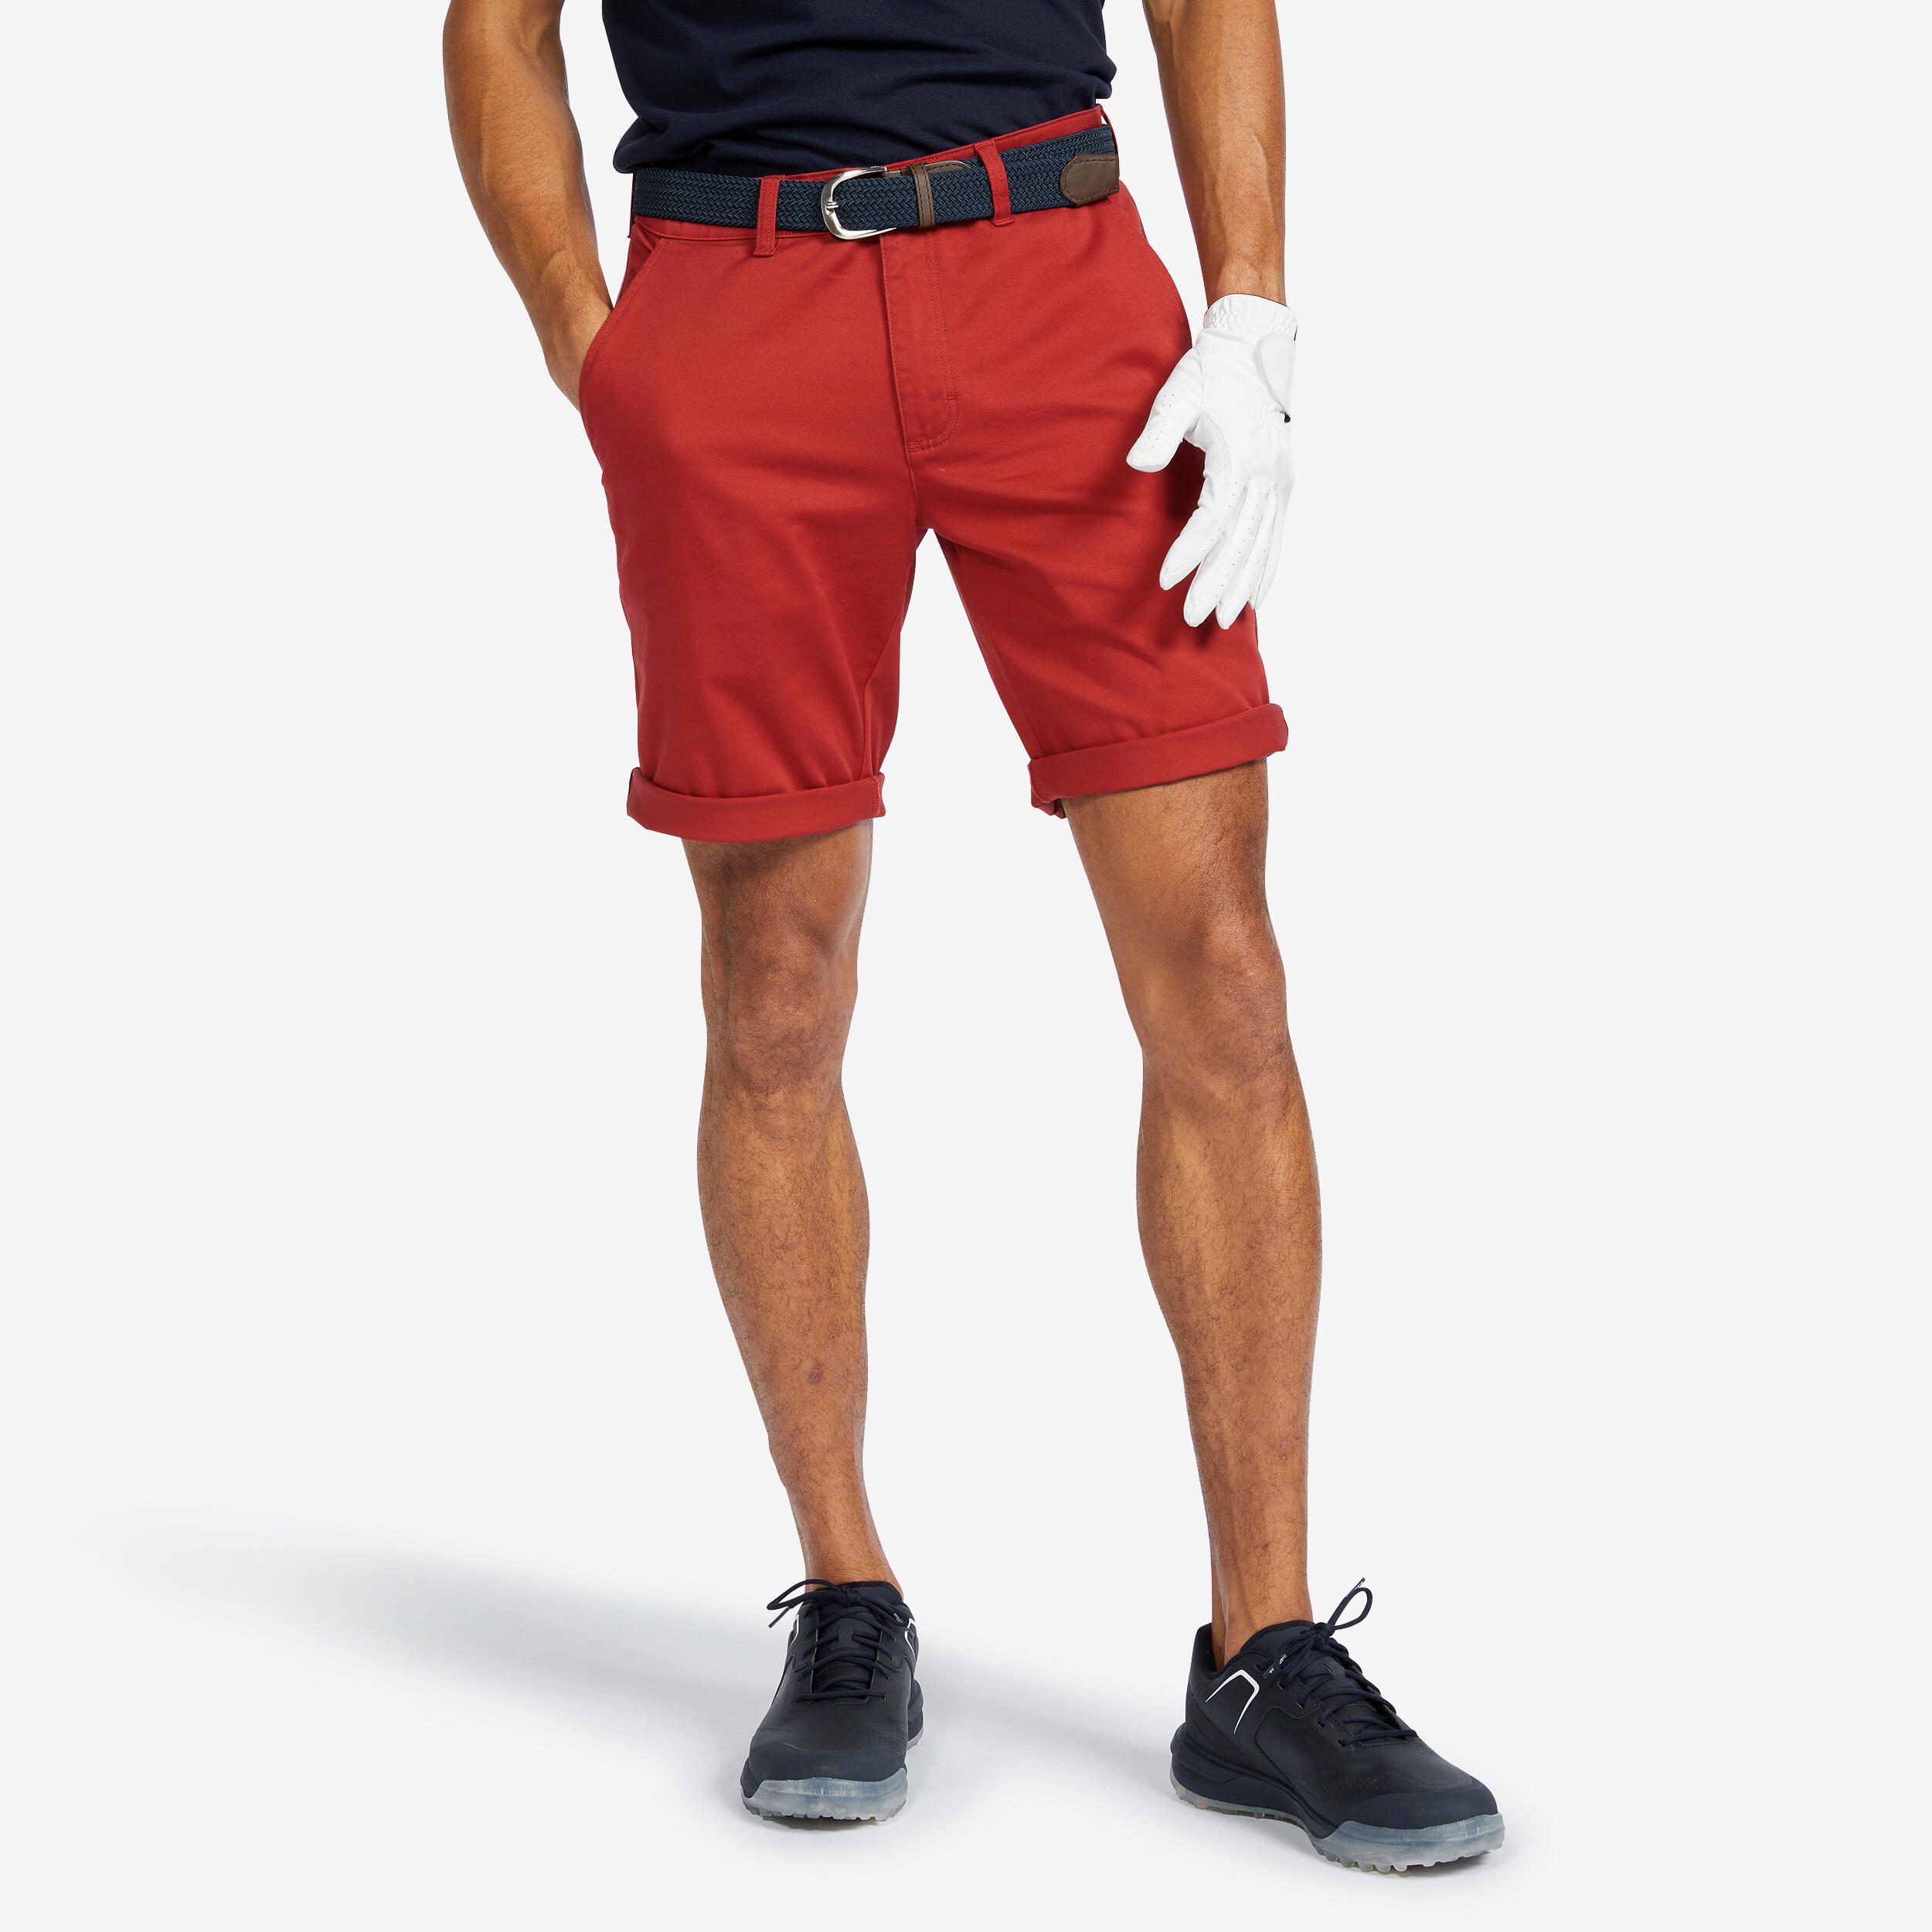 INESIS Men's golf chino shorts - MW500 dark red